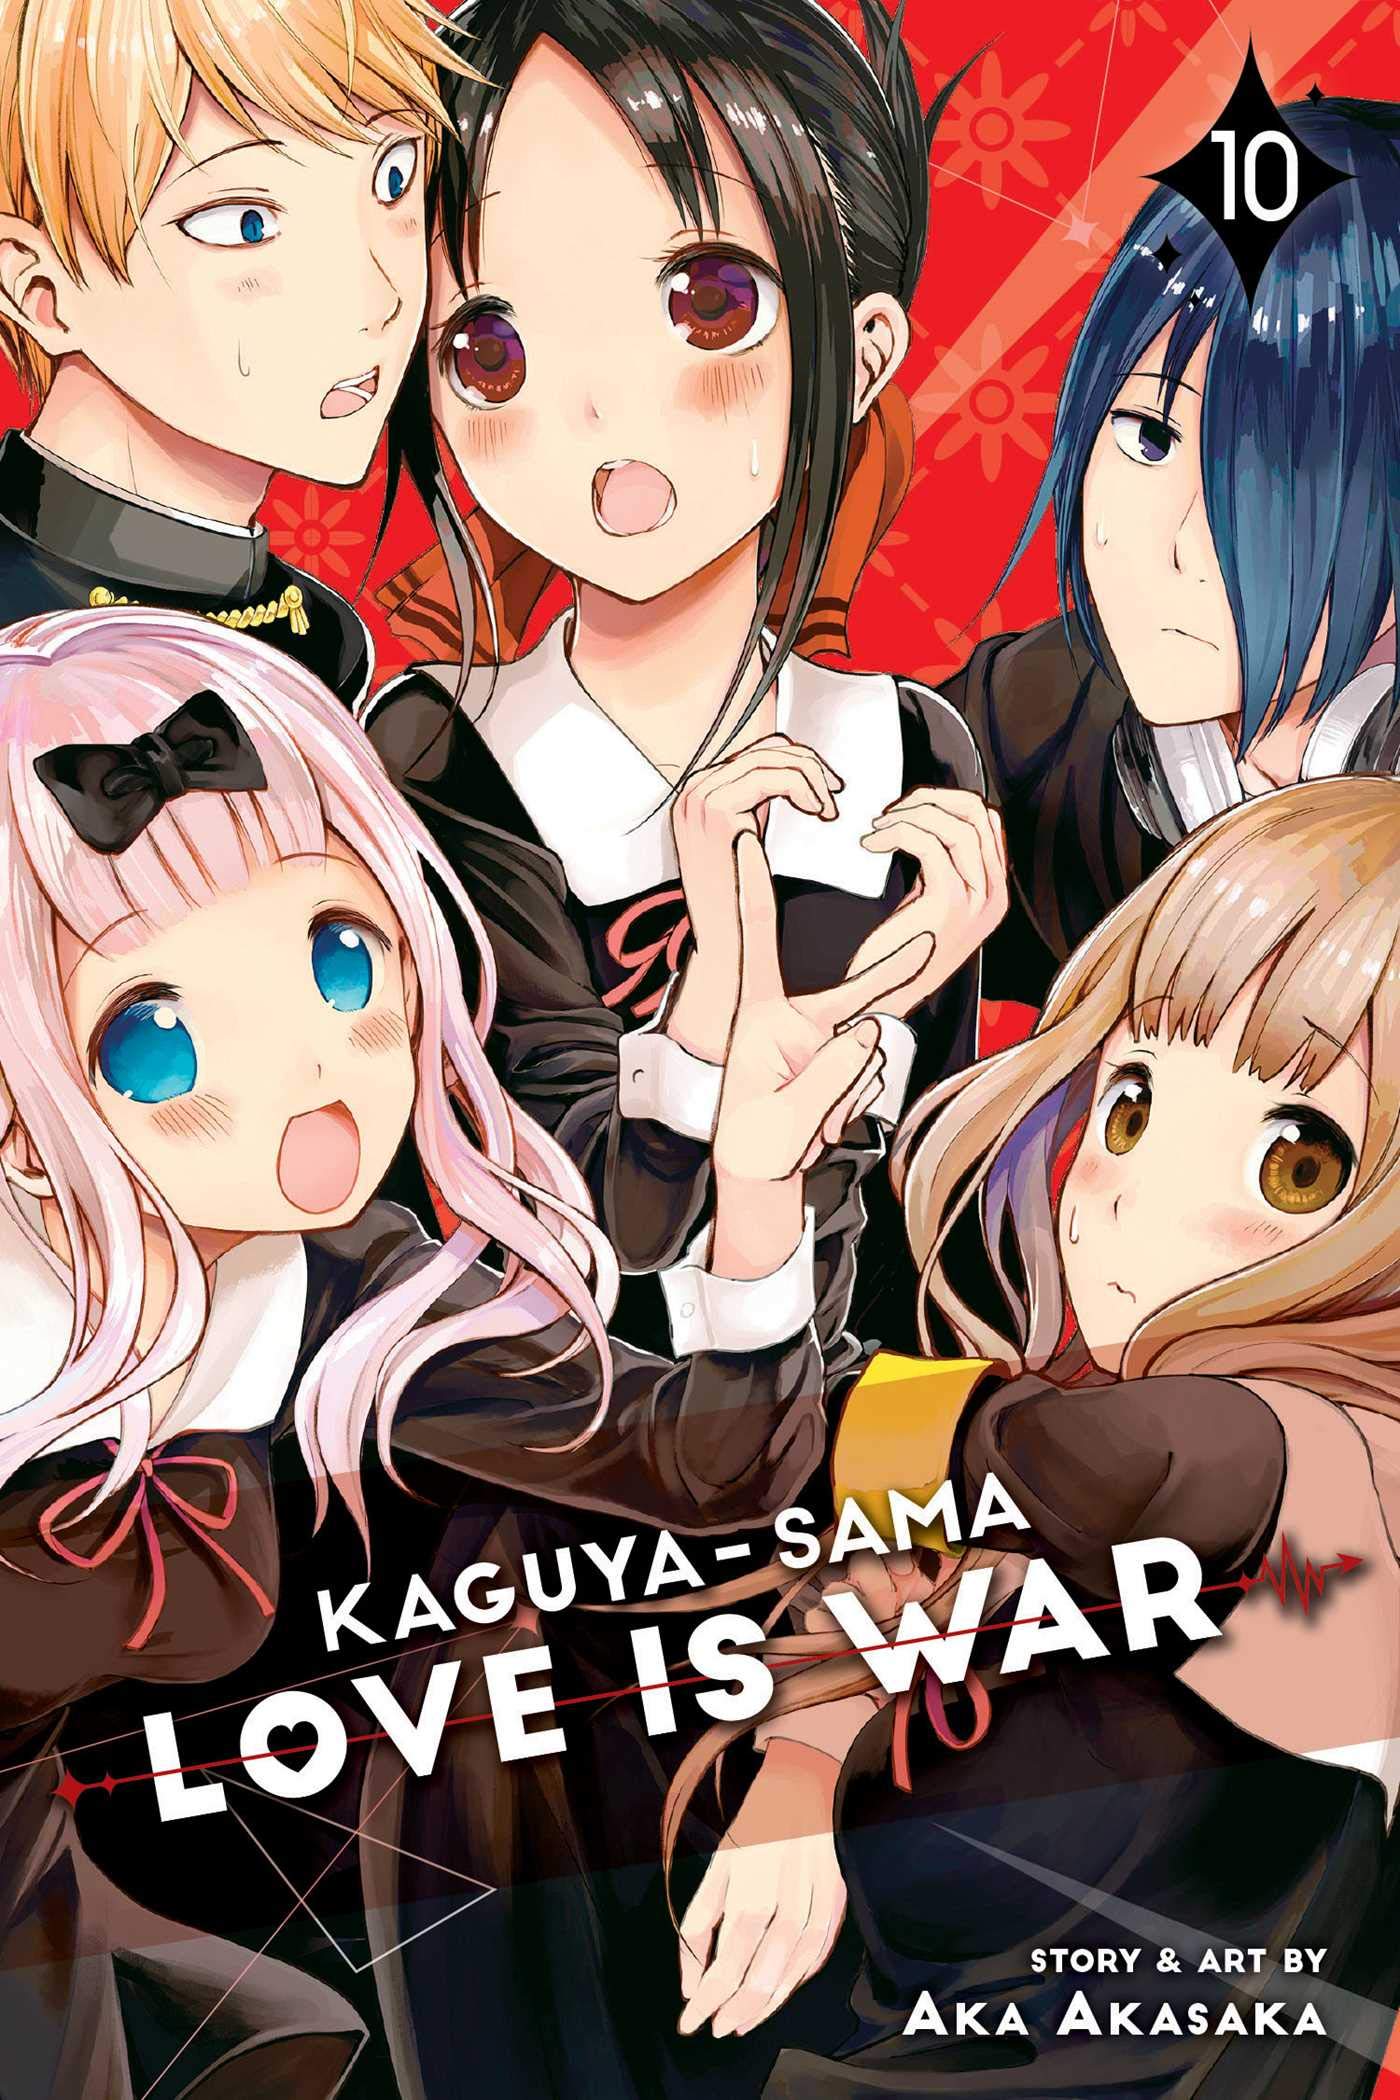 Mua Kaguya-sama: Love Is War, Vol. 10 (10) trên Amazon Mỹ chính hãng